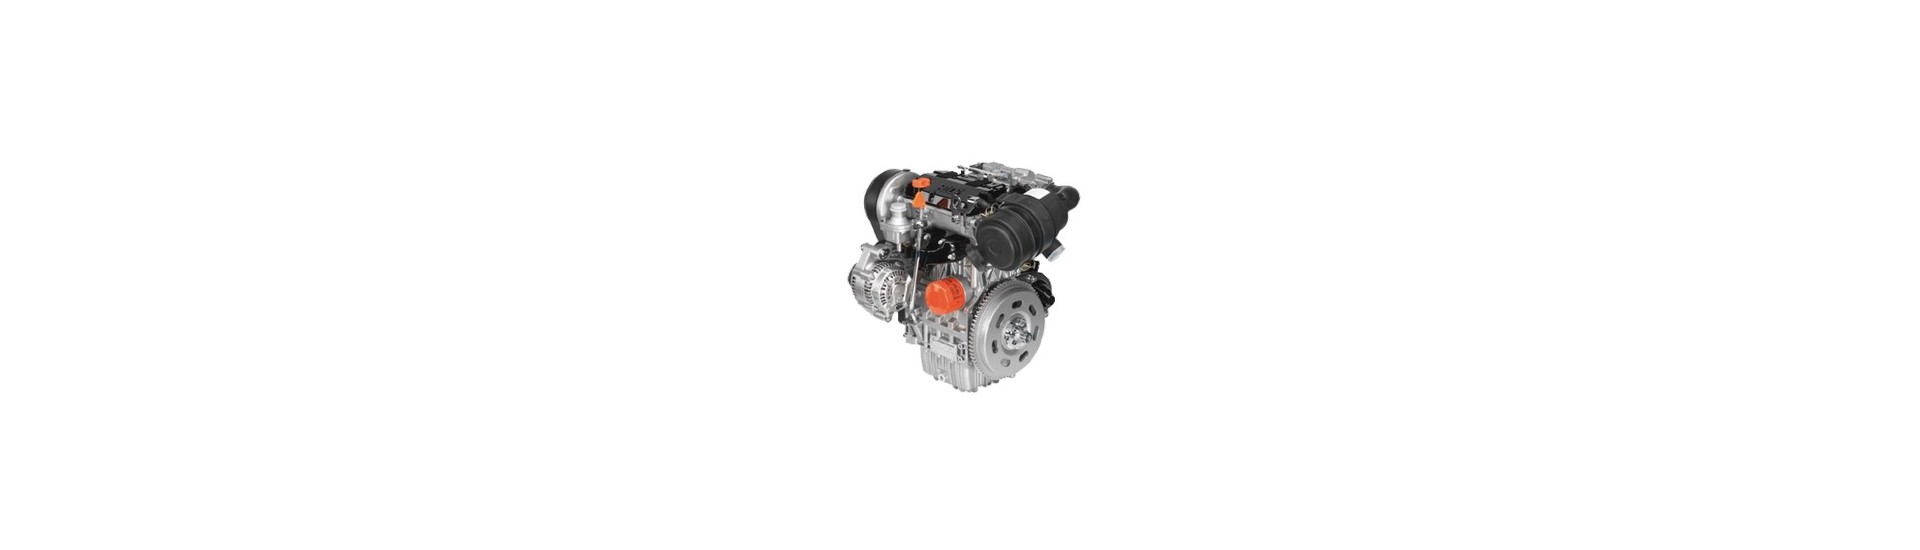 Pièces moteur occasion au meilleur prix pour moteur Lombardini essence 523 MPI